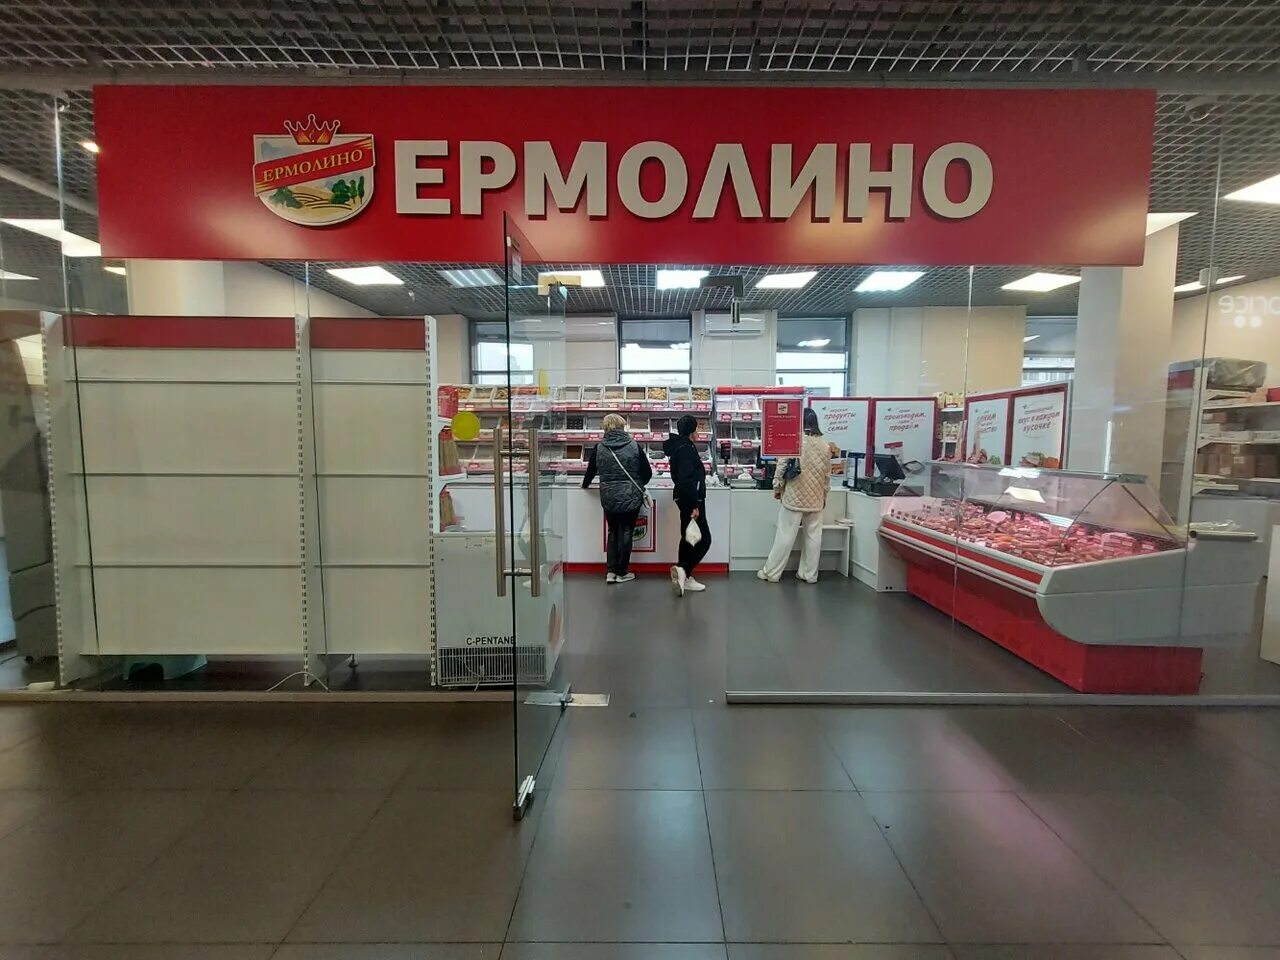 Ермолино магазины. Продукты Ермолино магазины в Москве. Ермолино магазины в Москве. Ермолино город центр. Цены в магазине ермолино в москве